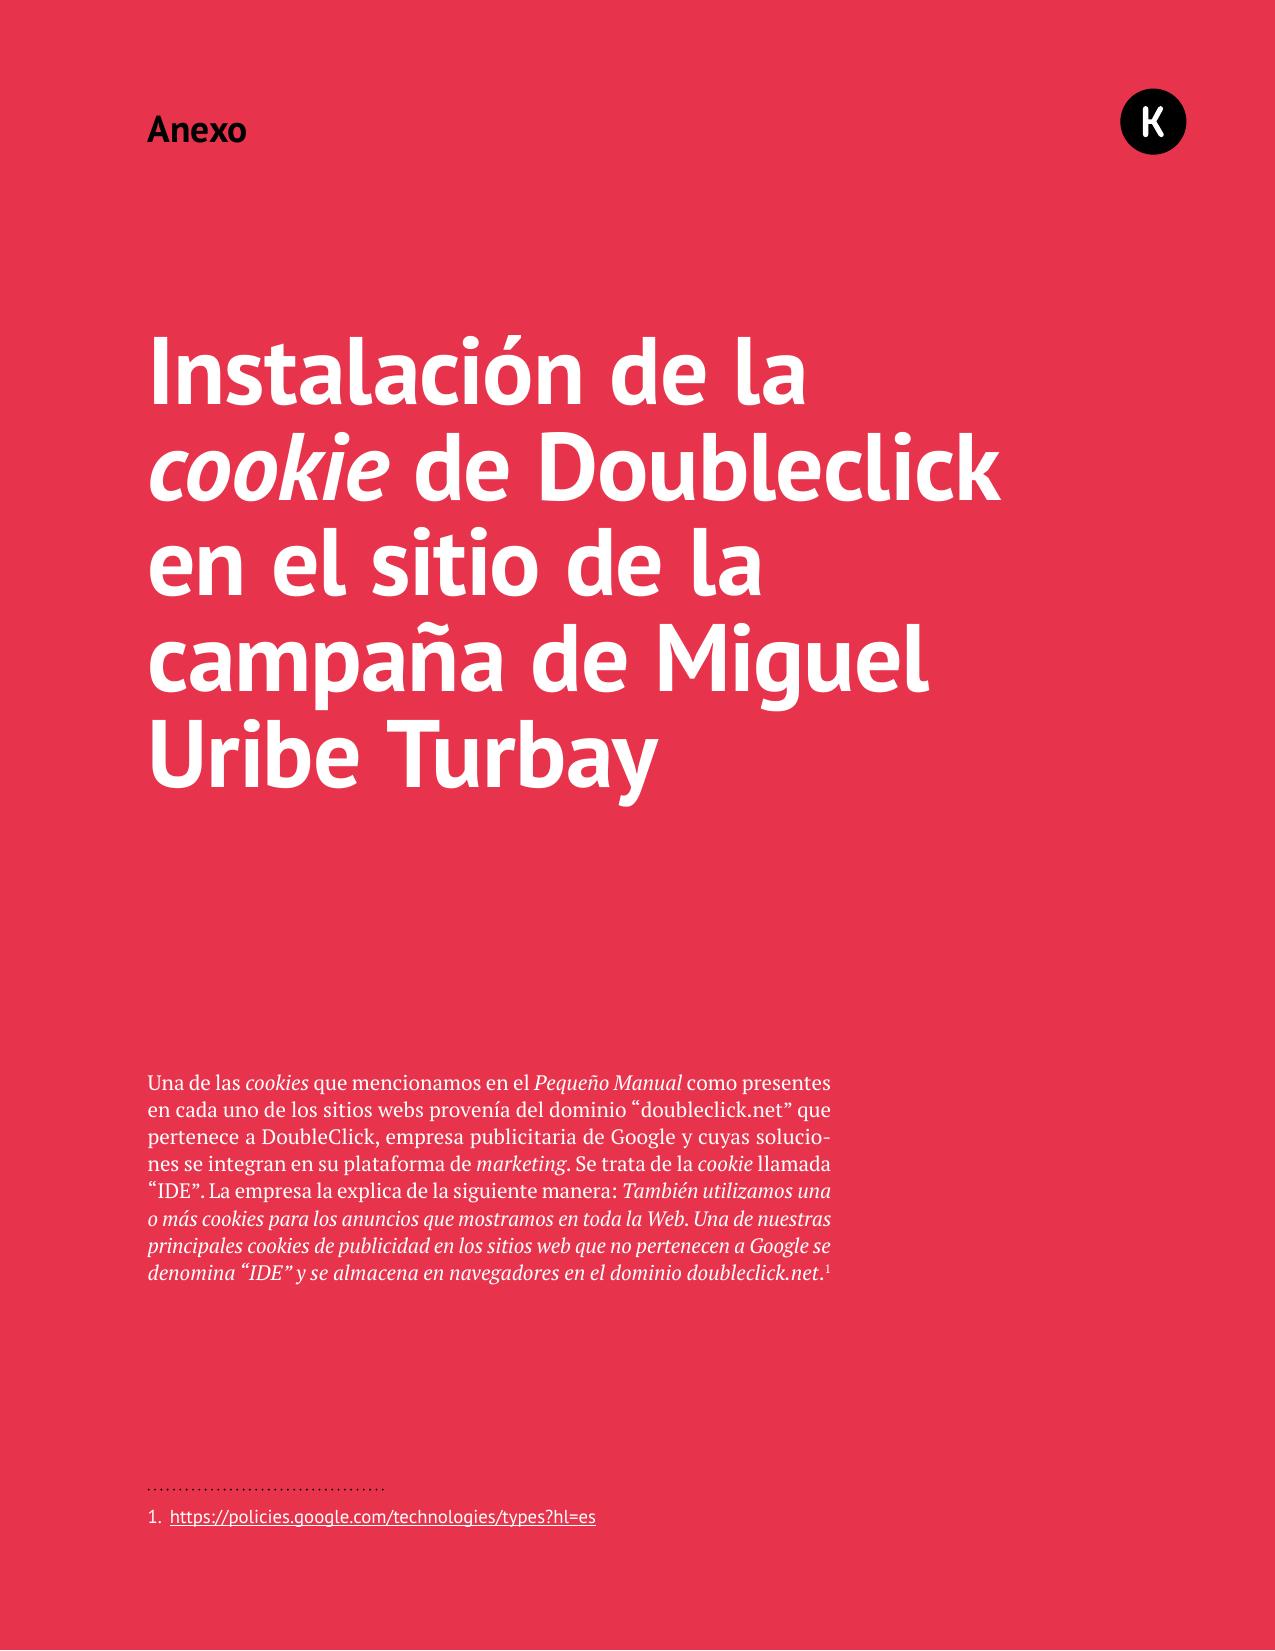 Anexo 05 - Instalación de la cookie de Doubleclick en el sitio de la campaña de Miguel Uribe Turbay